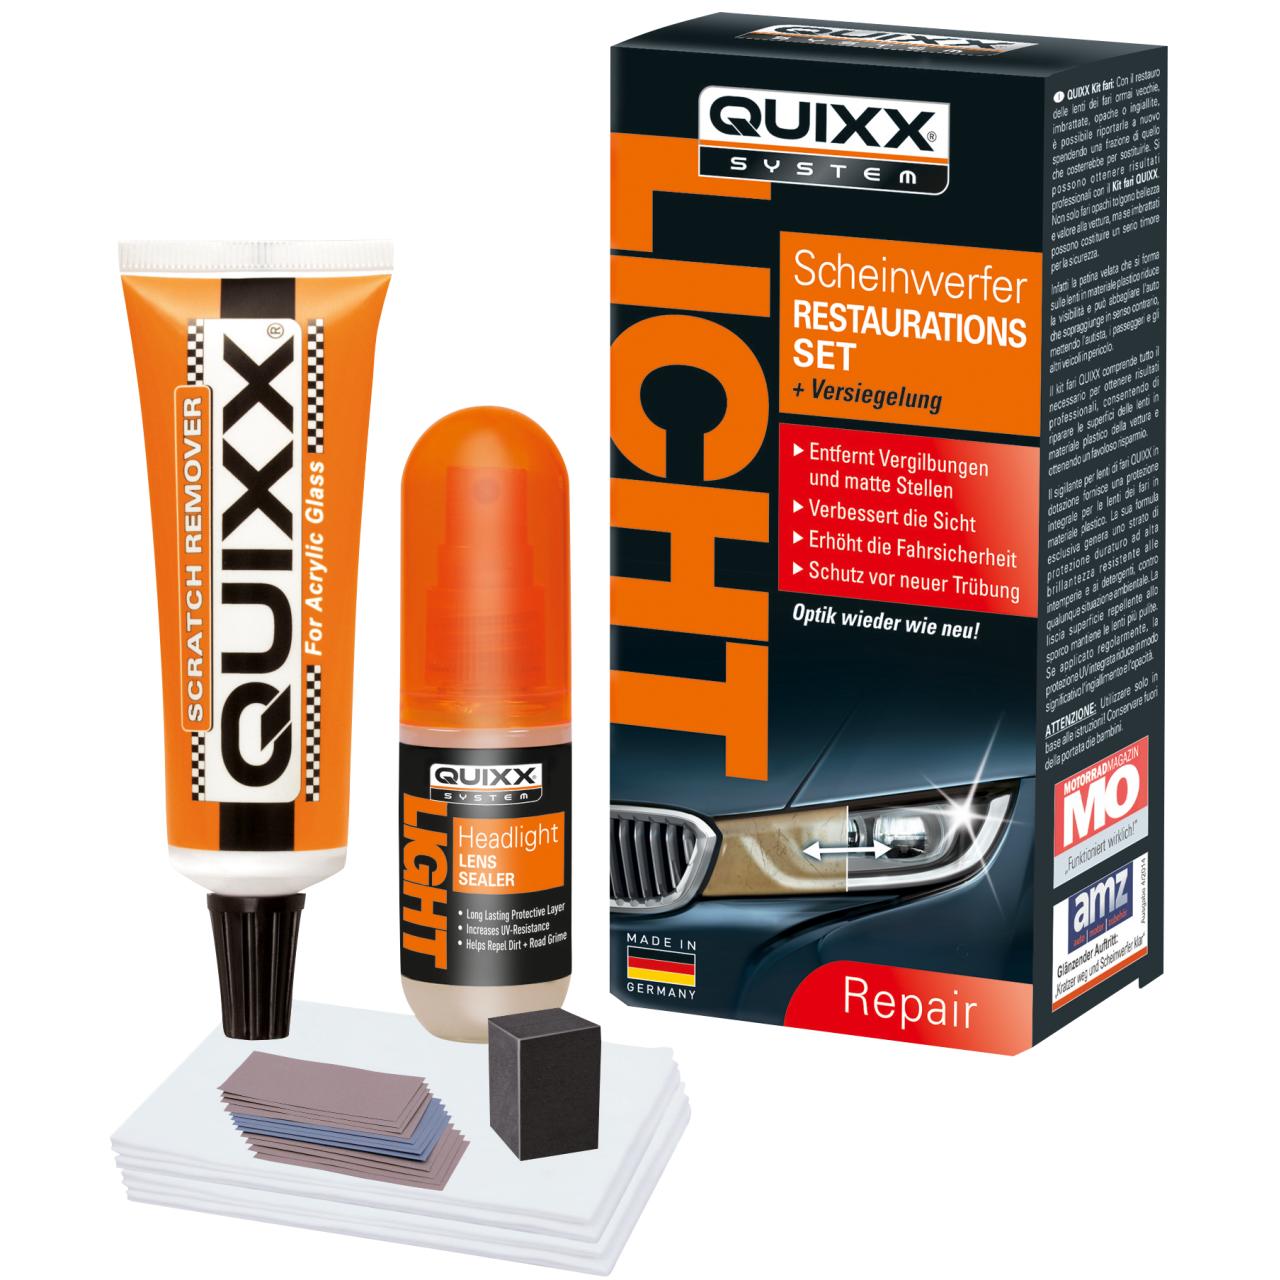 Quixx Scheinwerfer-Restaurations-Kit 50g